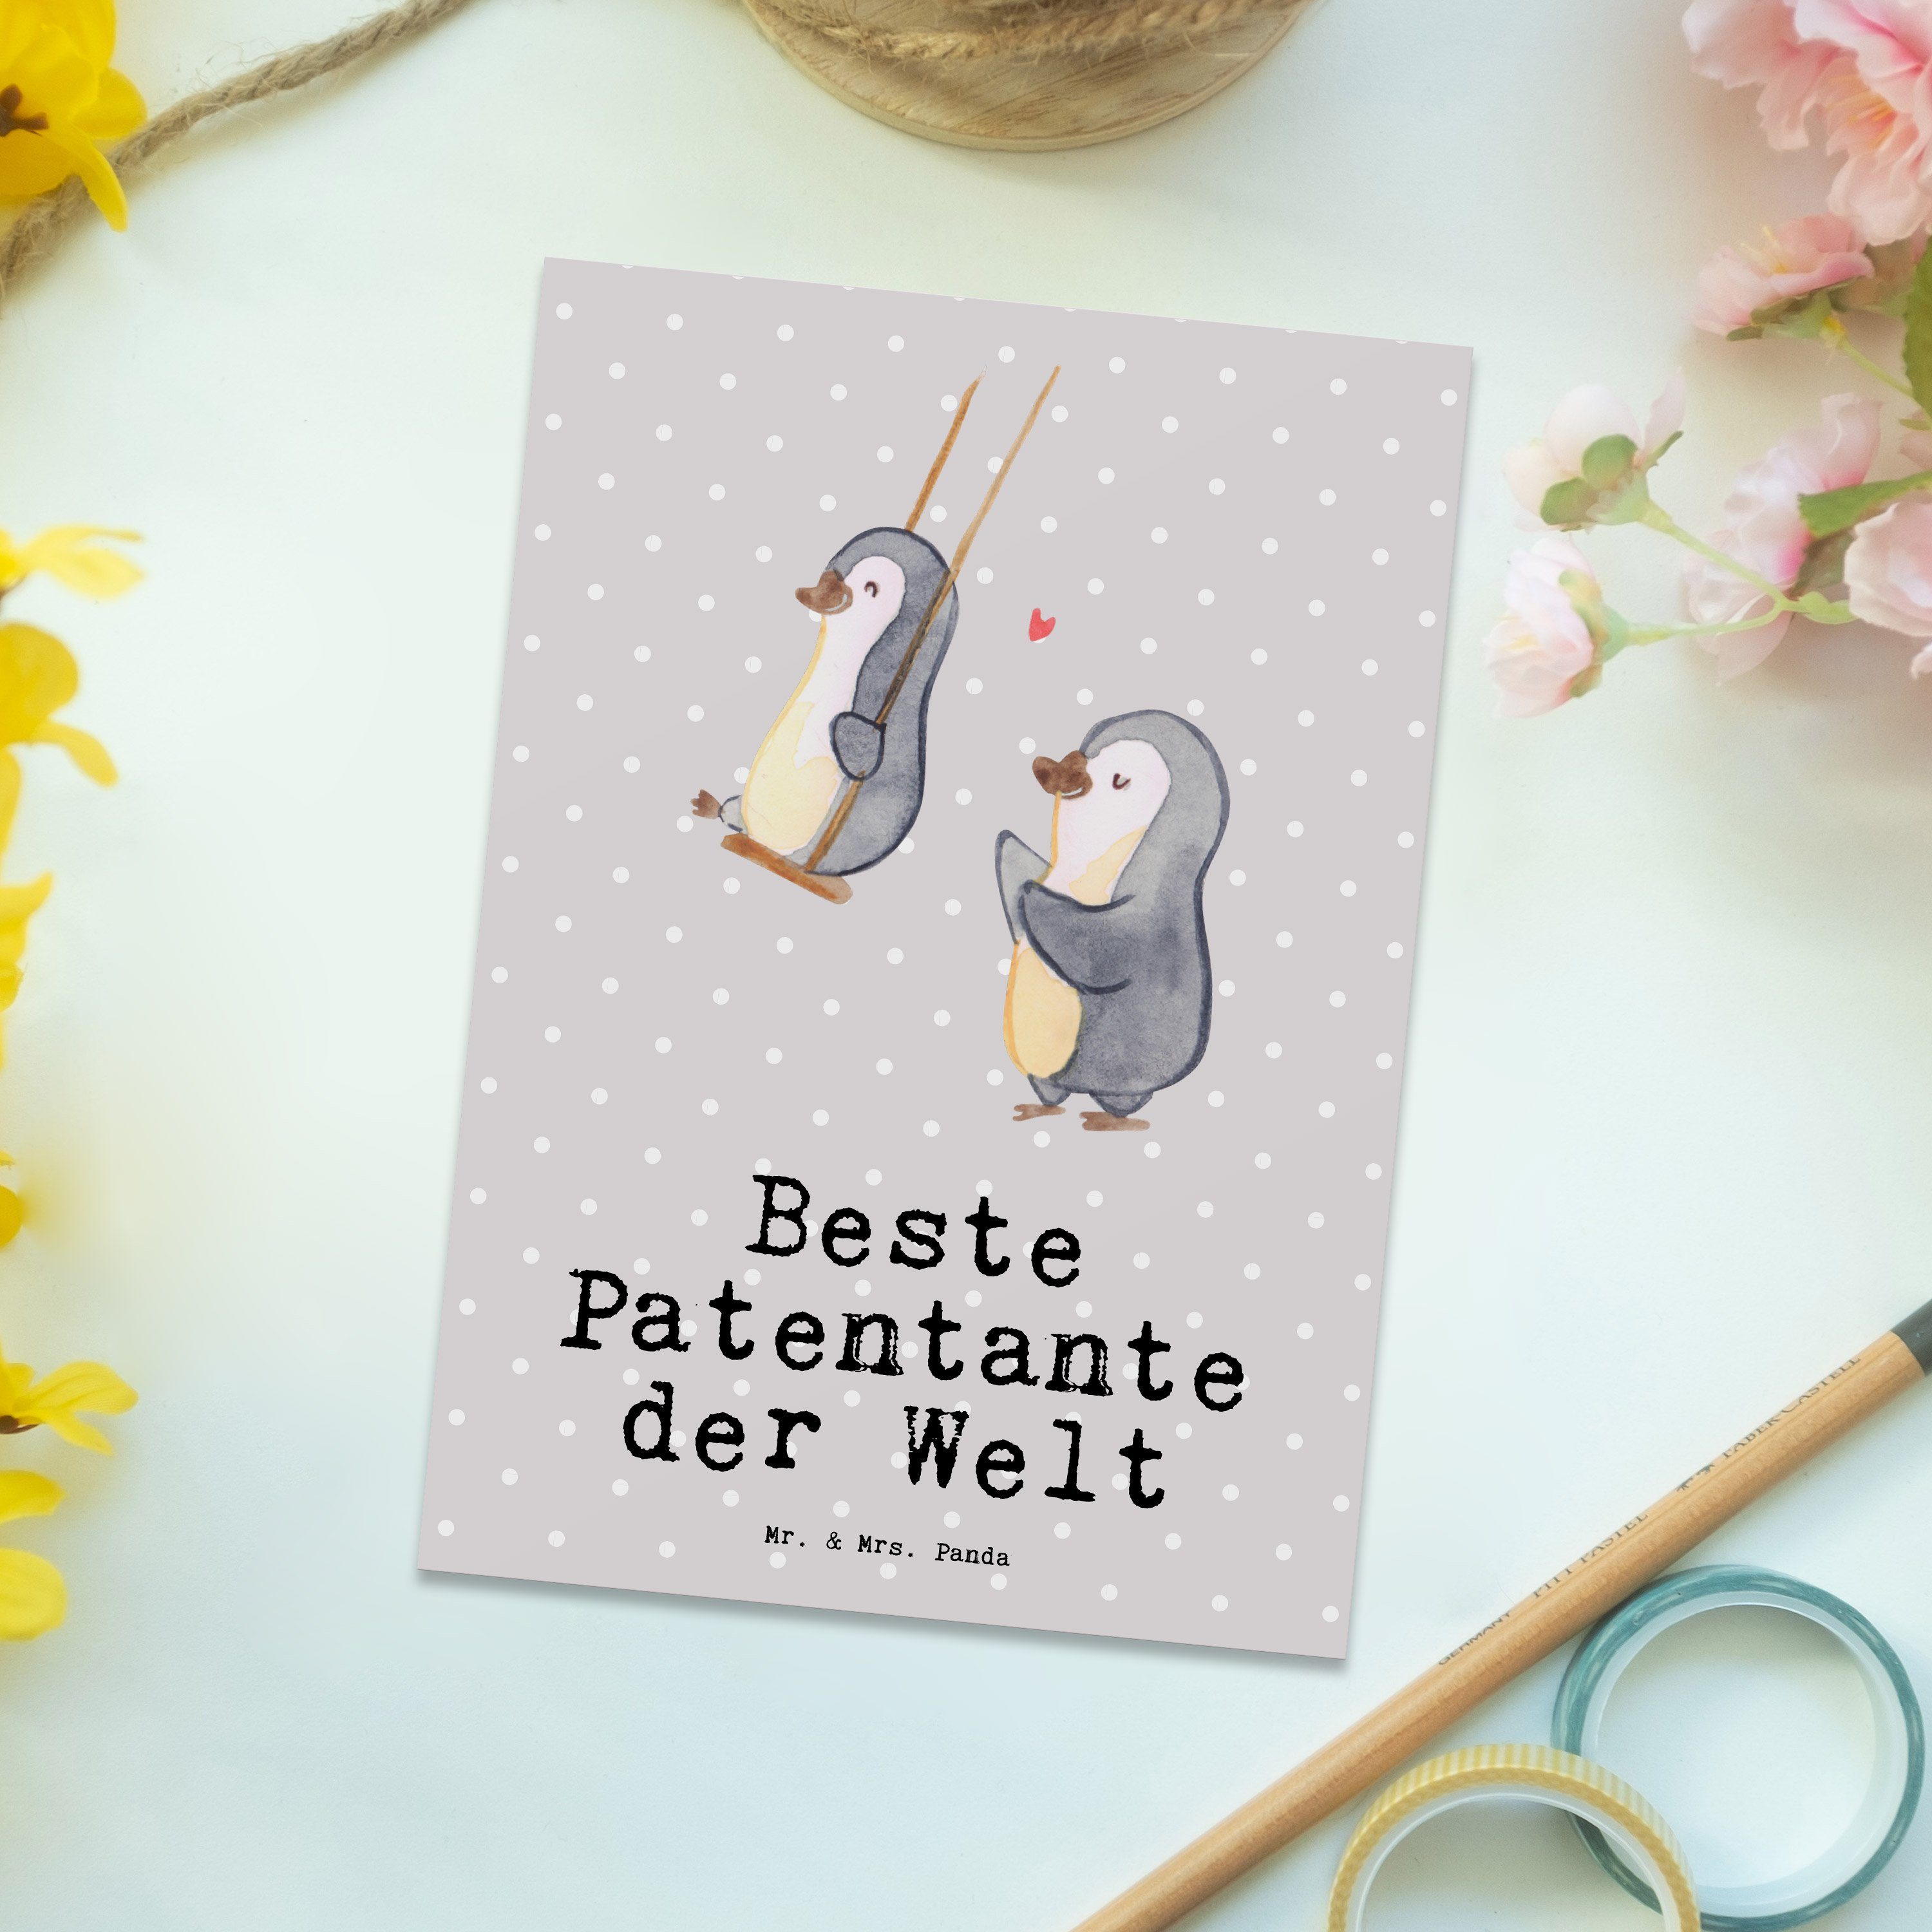 Patentante Grau Pastell Mr. & der Panda Mrs. - Beste - Geschenk Welt Pinguin Postkarte Geschenk,